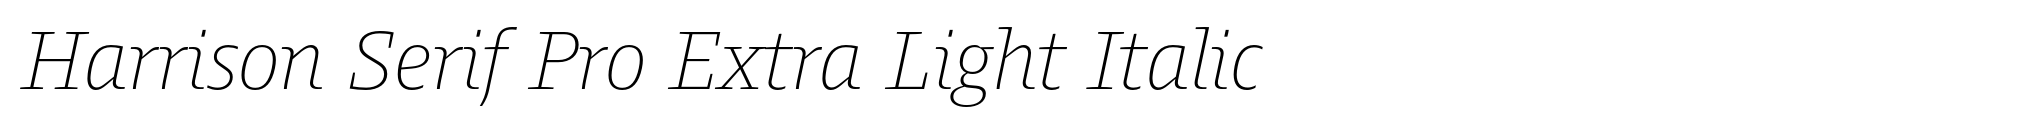 Harrison Serif Pro Extra Light Italic image